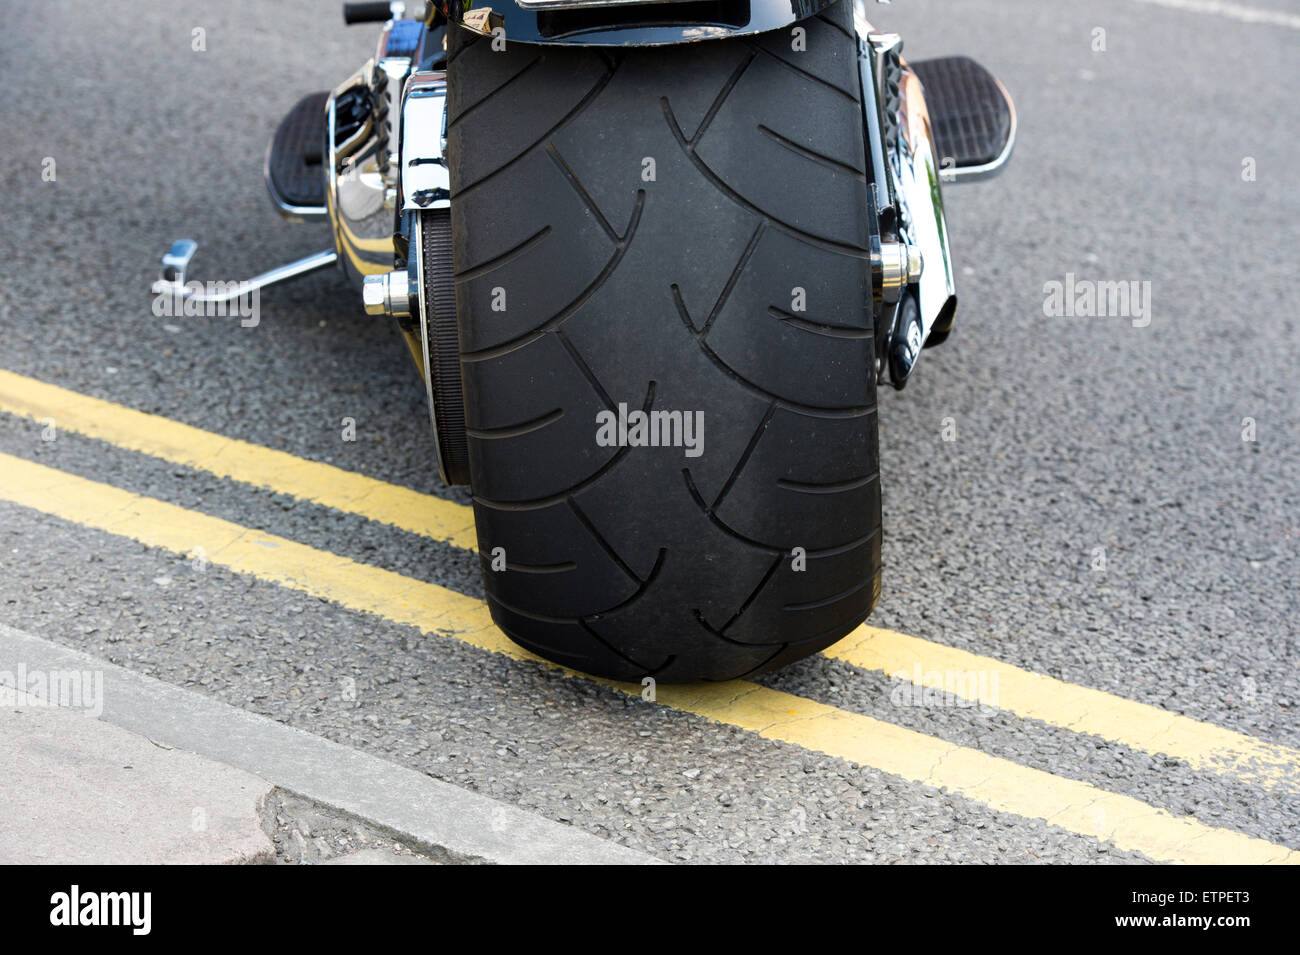 Fett hinteren Reifen auf einer Harley Davidson Motorrad geparkt auf doppelte gelbe Linien Stockfoto